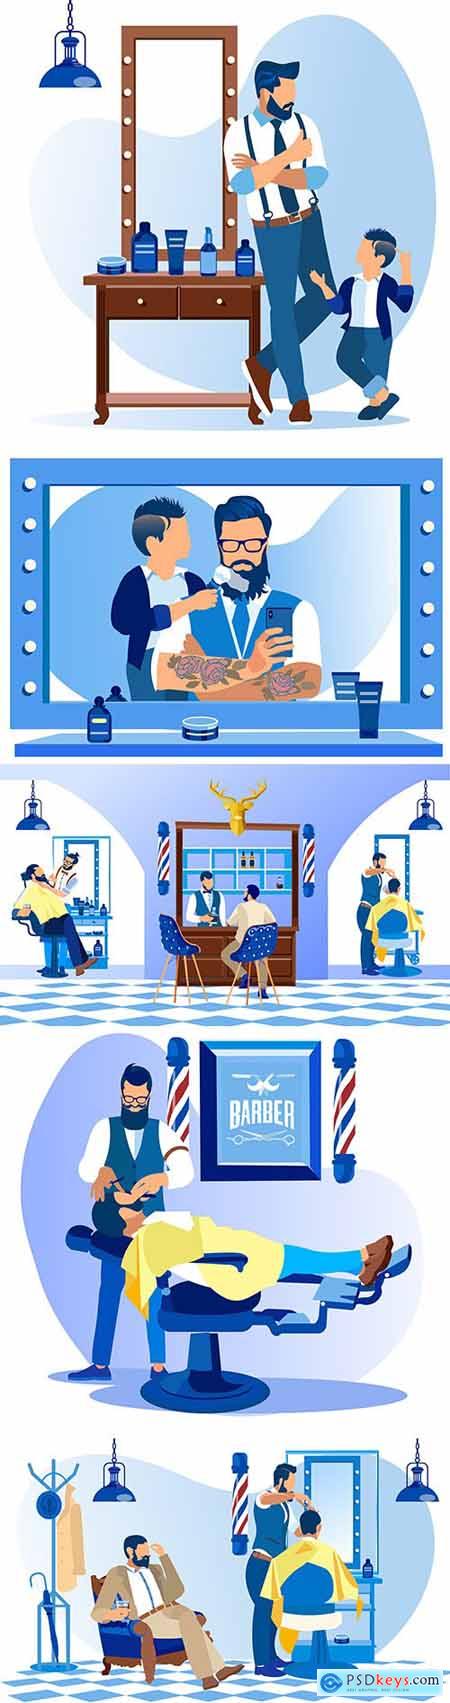 Professional beauty salon, men s hair salon illustration